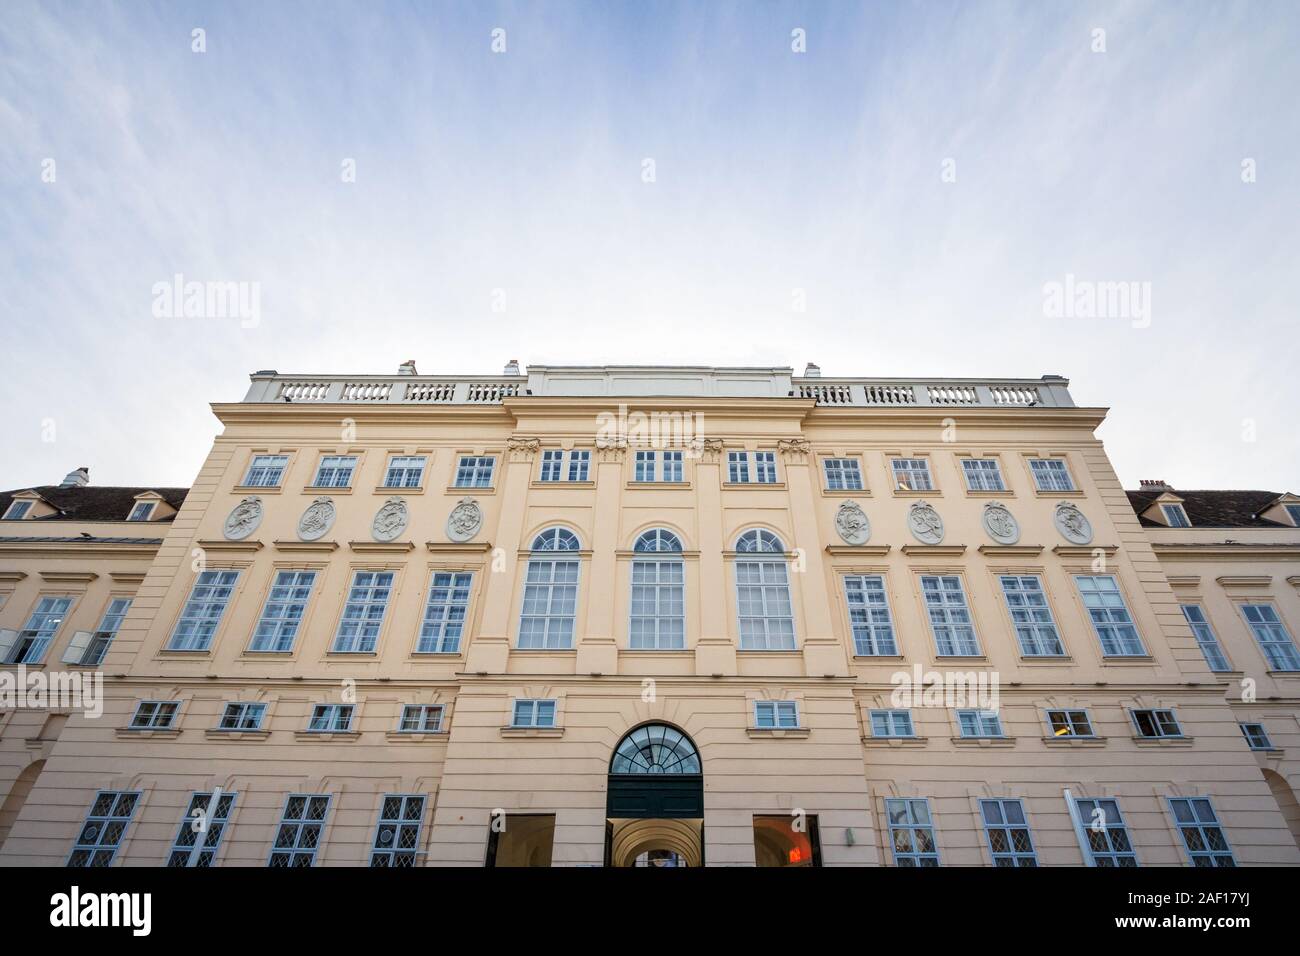 Hofstallung façade, l'entrée principale le Museumsquartier de Vienne. Museumsquartier est la zone principale de Vienne contaning les musées d'art, avec un typic Banque D'Images